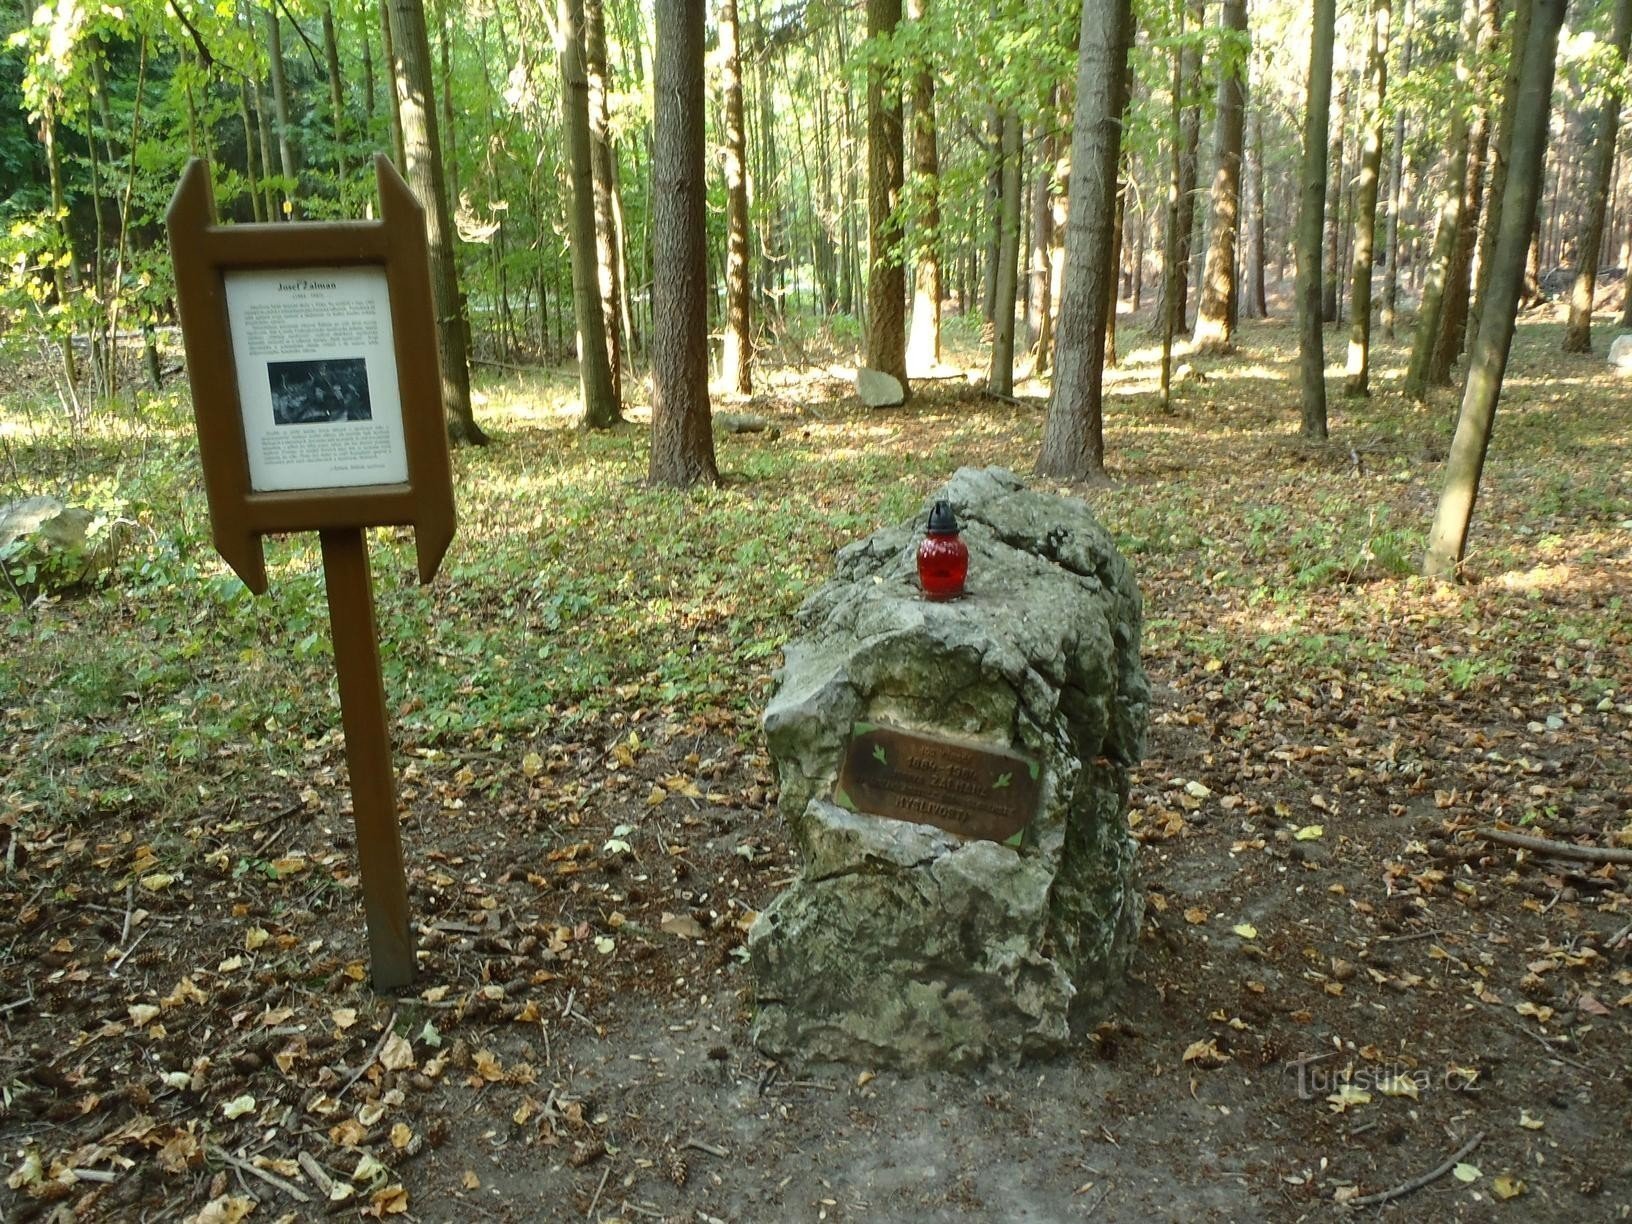 Žalman's monument - 18.9.2011